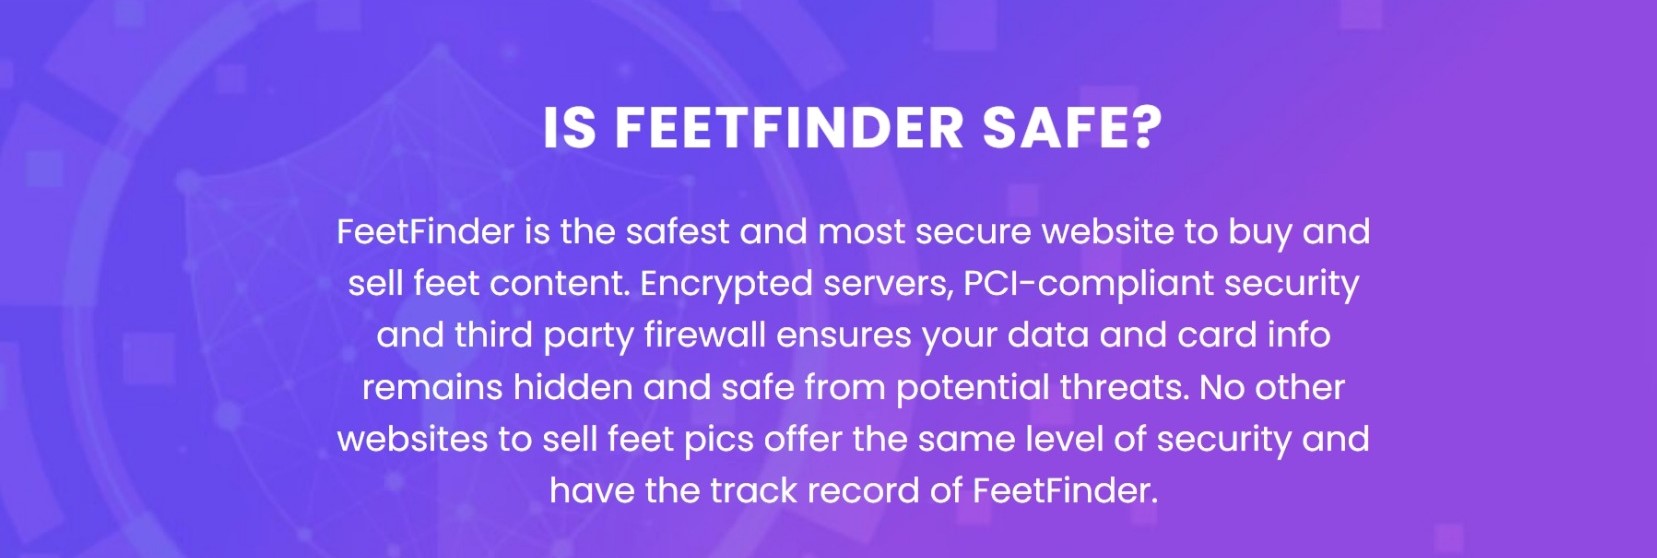 is feetfinder safe?